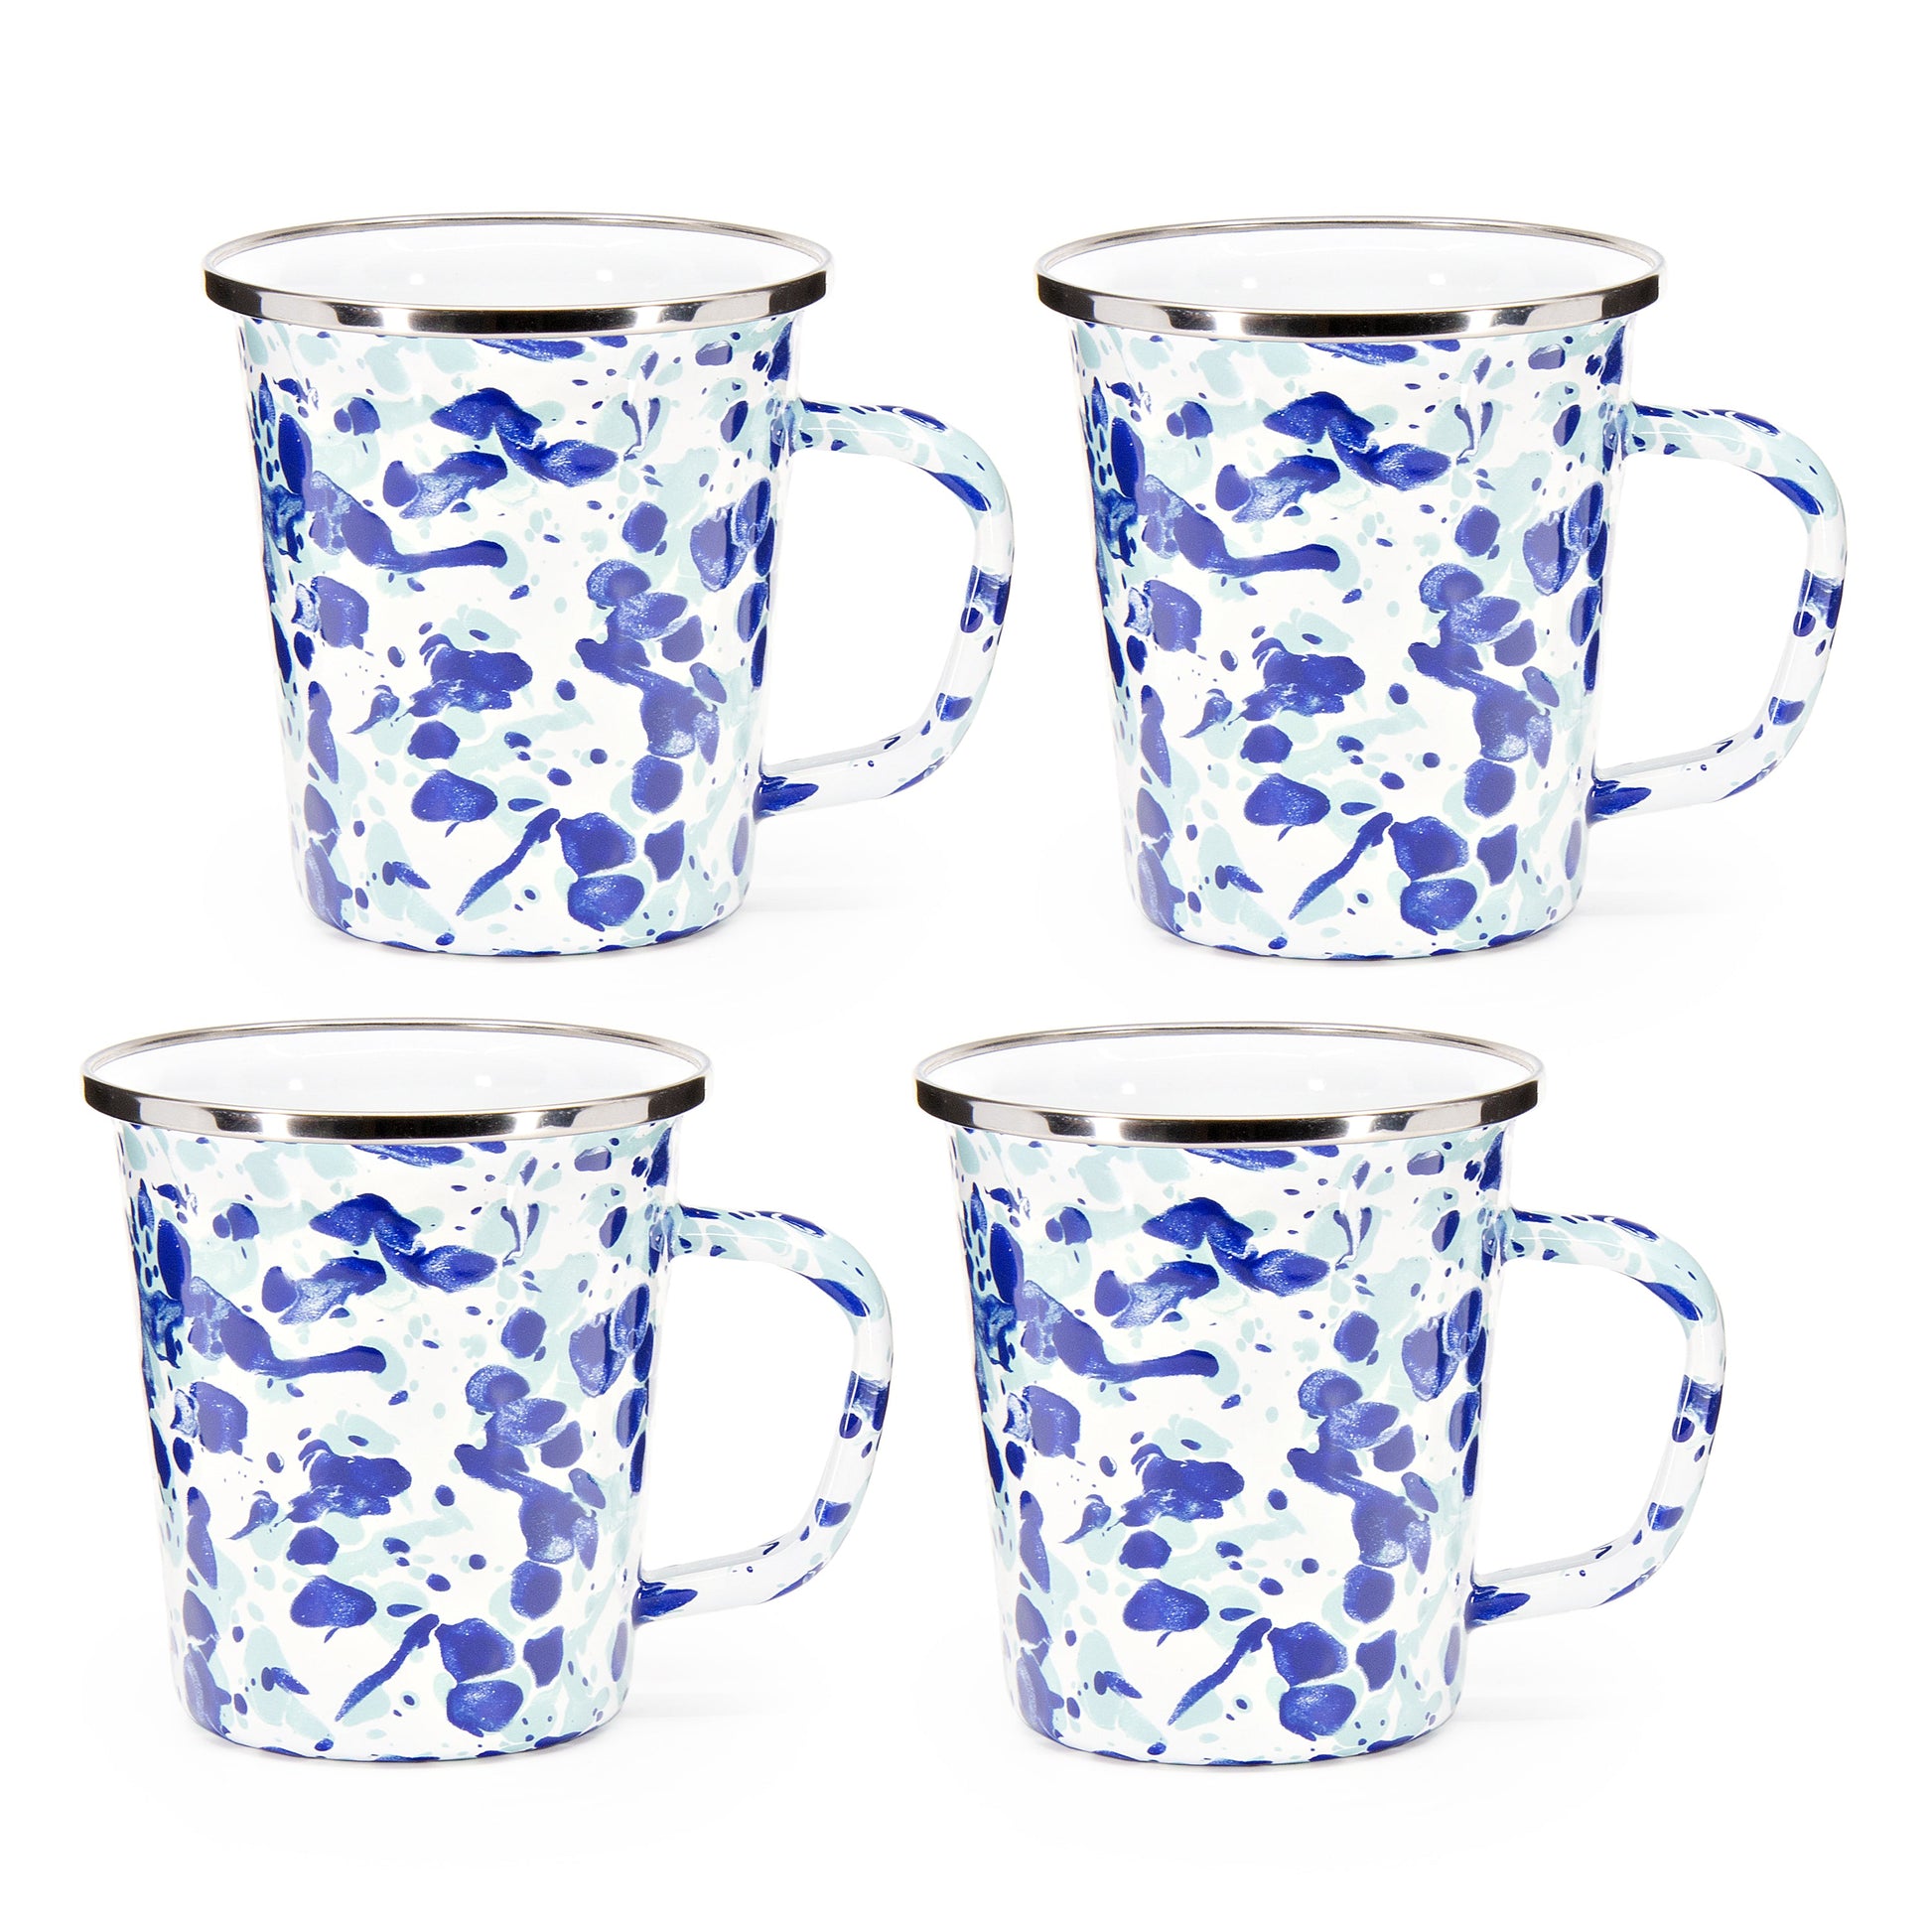 Enamel Latte Mugs - Set of 4-Mug-Nautical Decor and Gifts